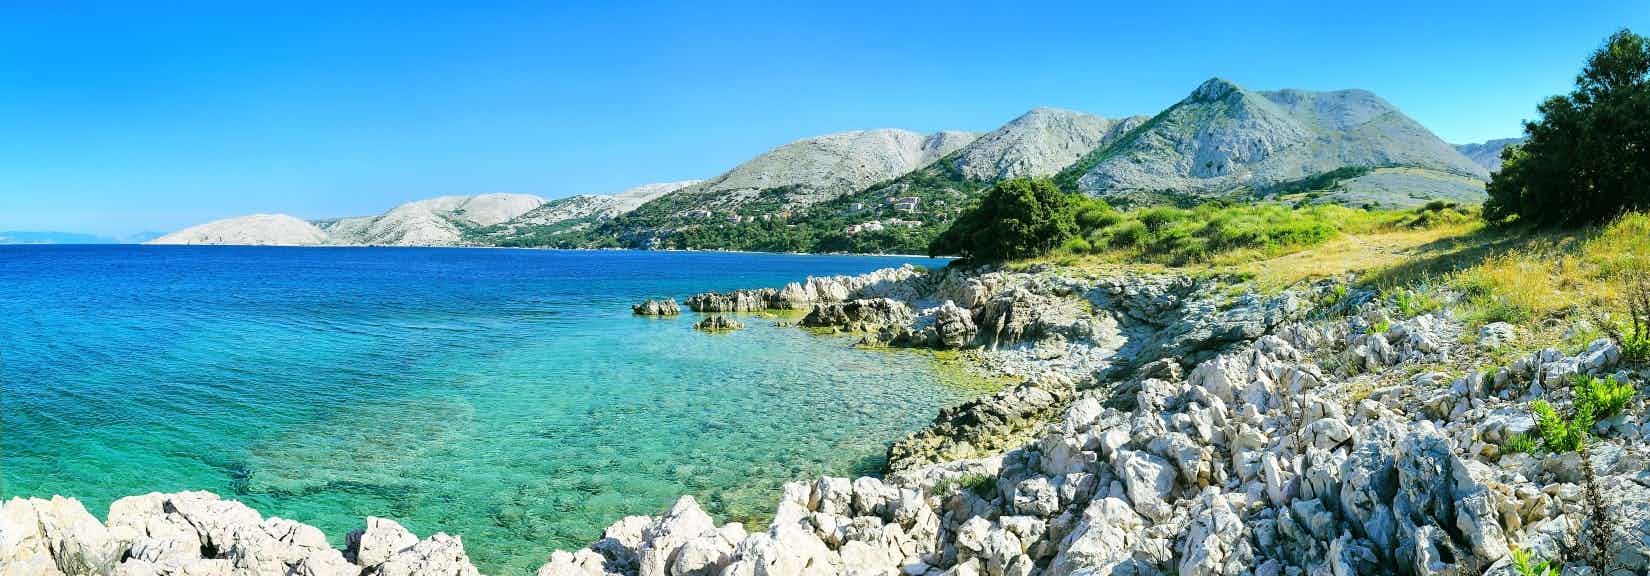 Camping 4 étoiles sur la mer Adriatique